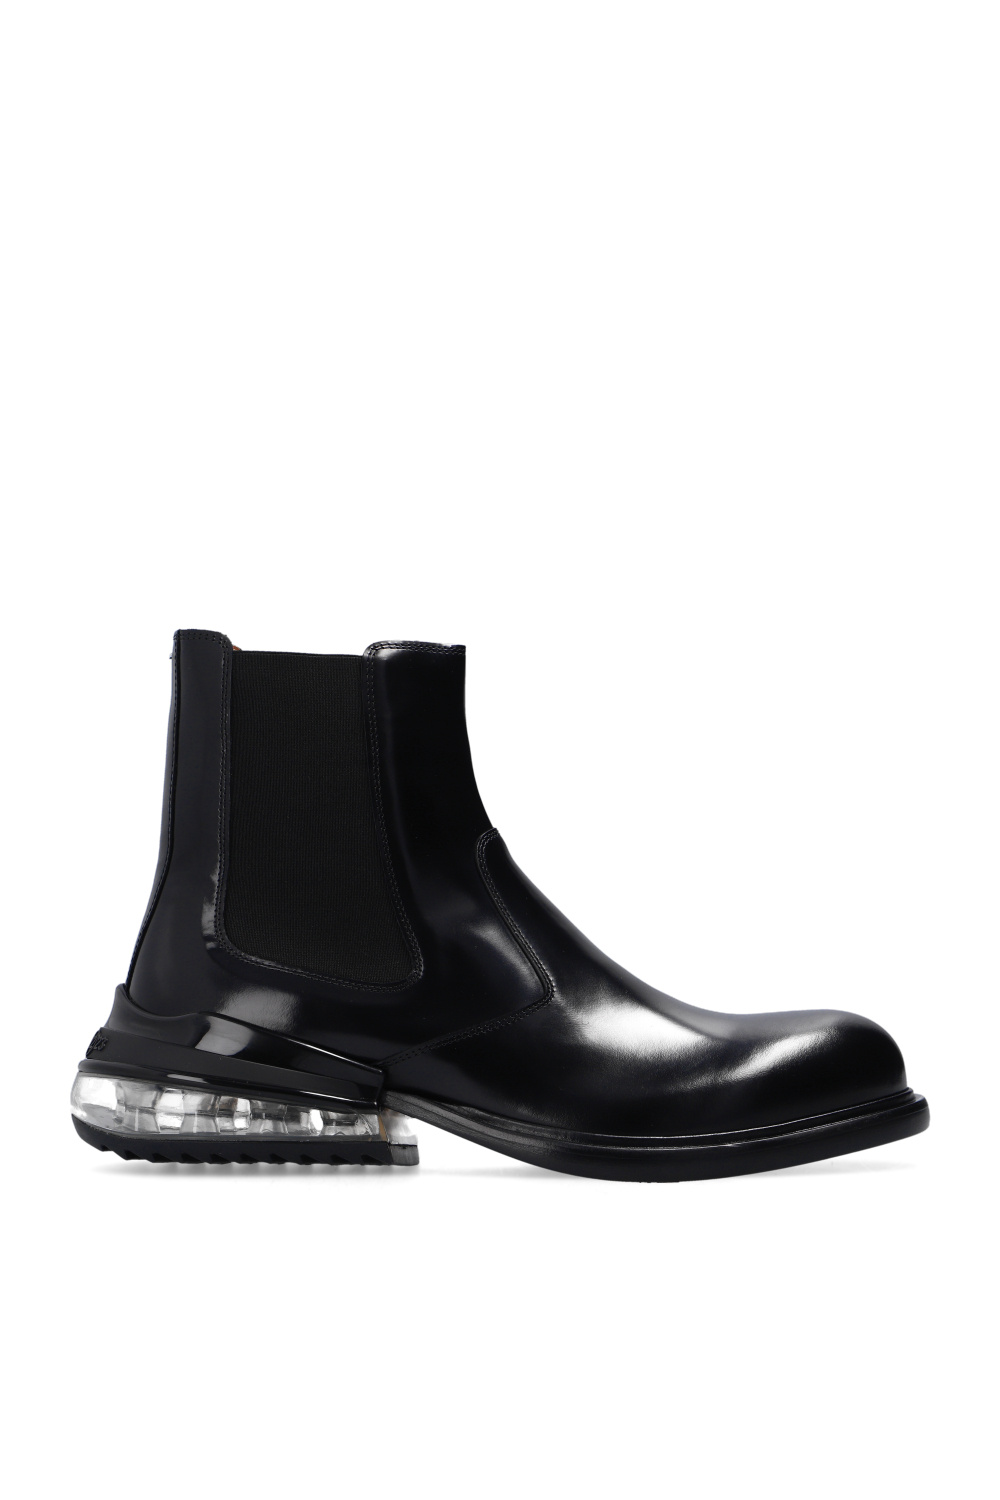 Louis Vuitton Kensington Chelsea Boot BLACK. Size 09.5